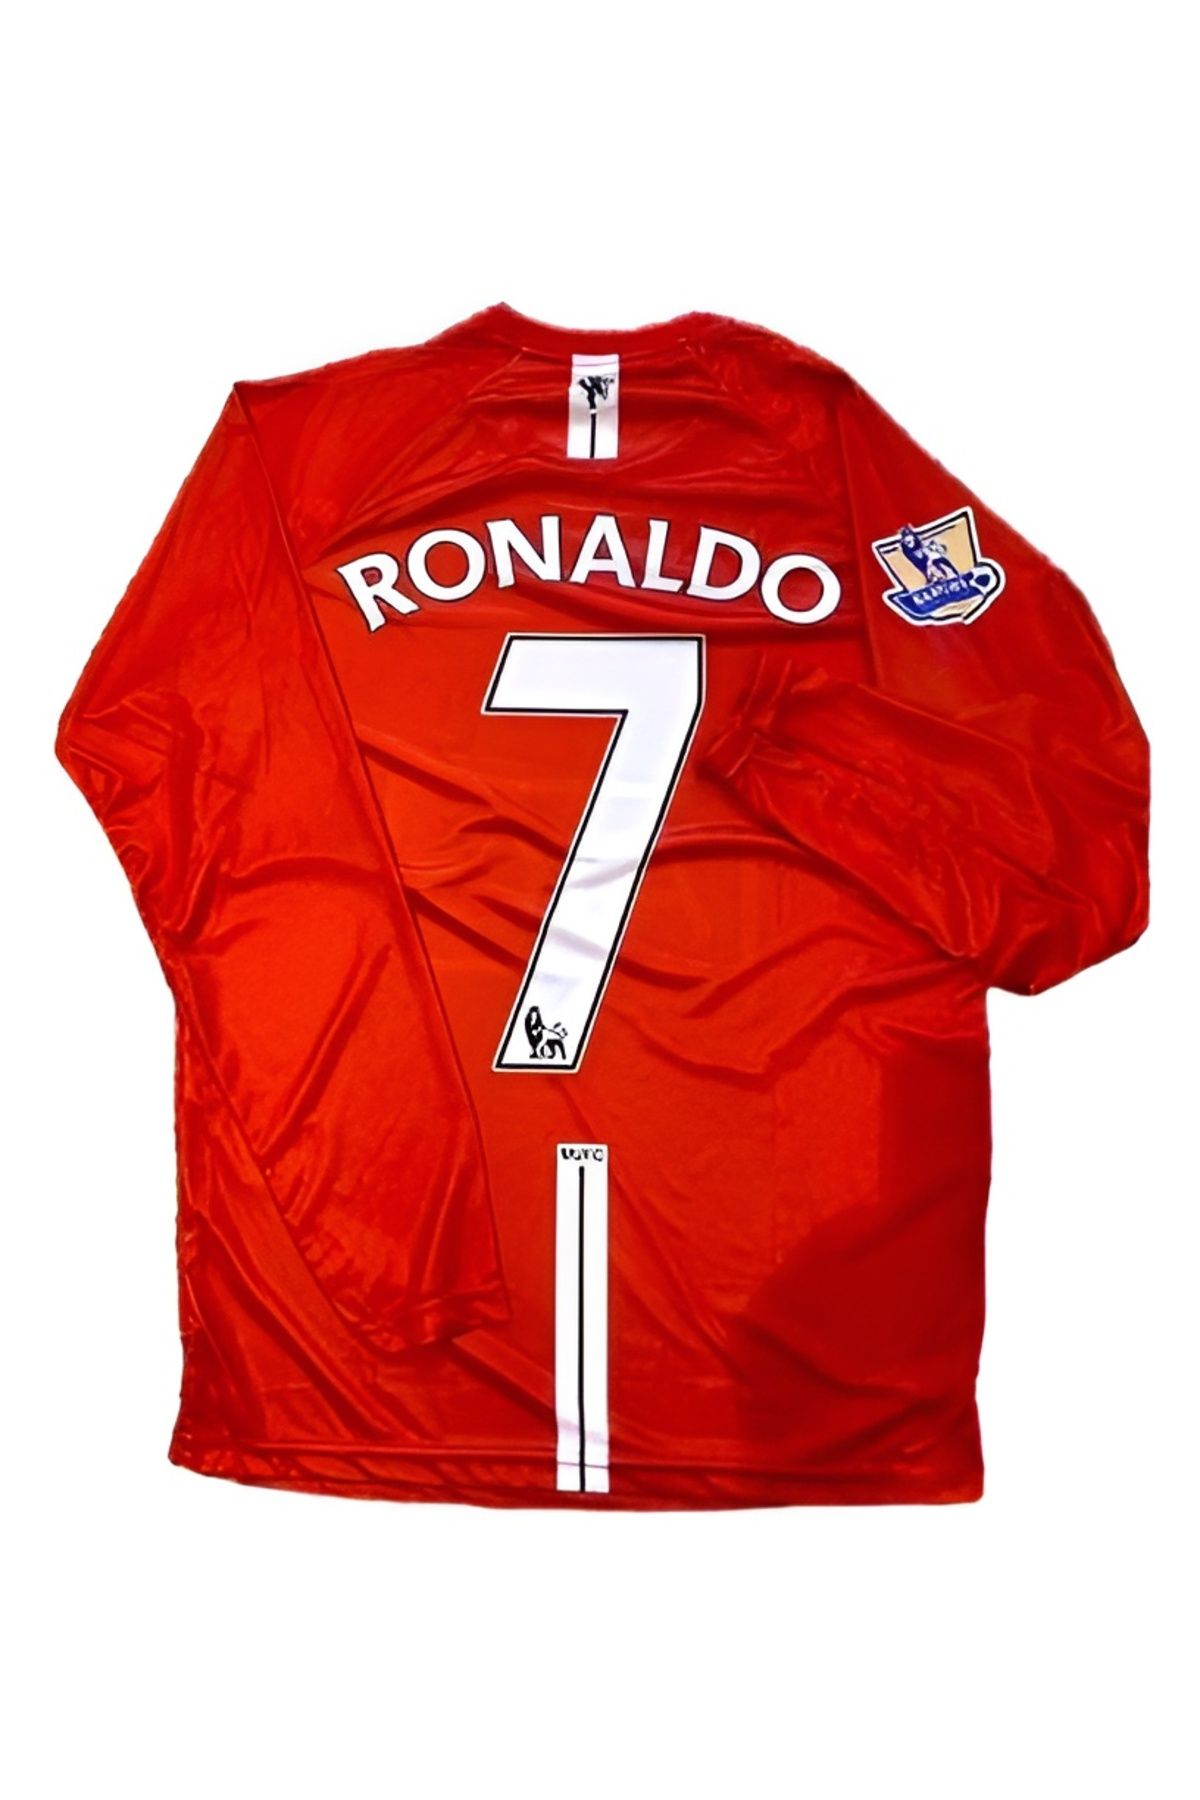 DENAPCAL Ronaldo Uzun Kollu Kırmızı 2008 Şampiyonlar Ligi Retro Manchester United Forması